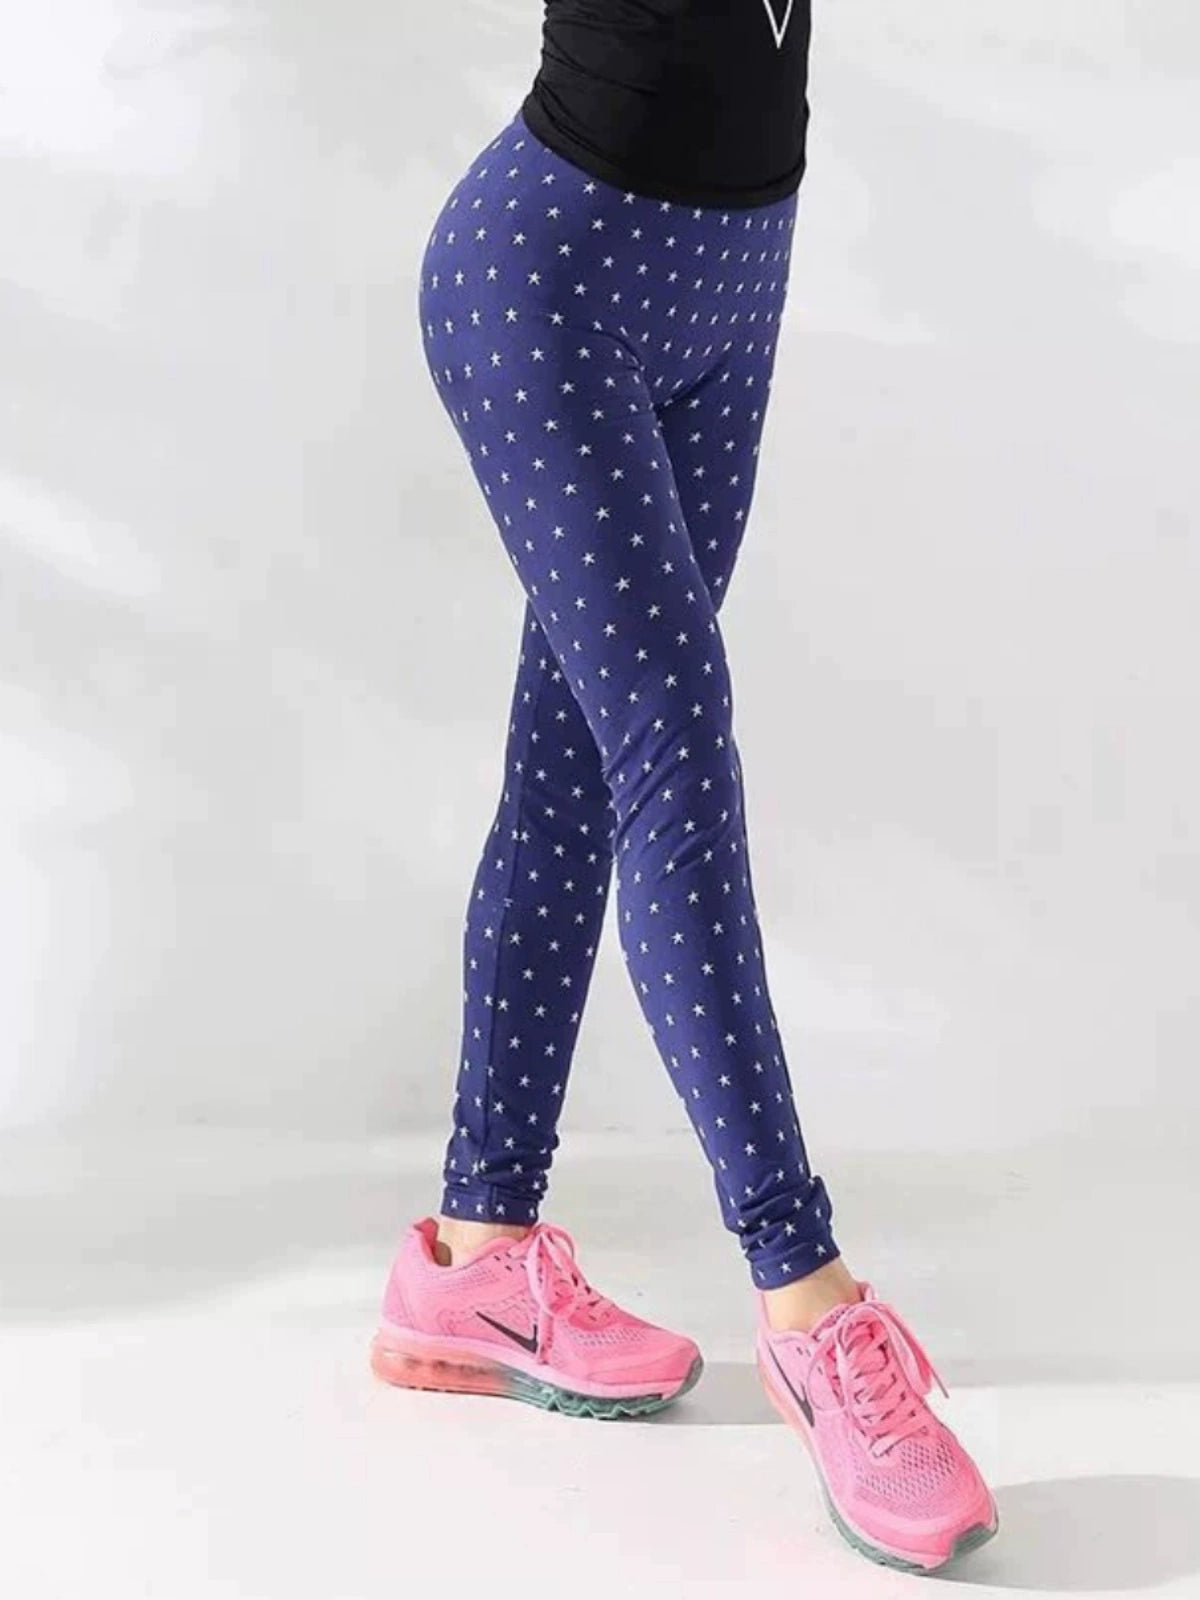 Huaseyundong YC Women's Fitness Leggings: Stylish Embroidered Yoga Pants